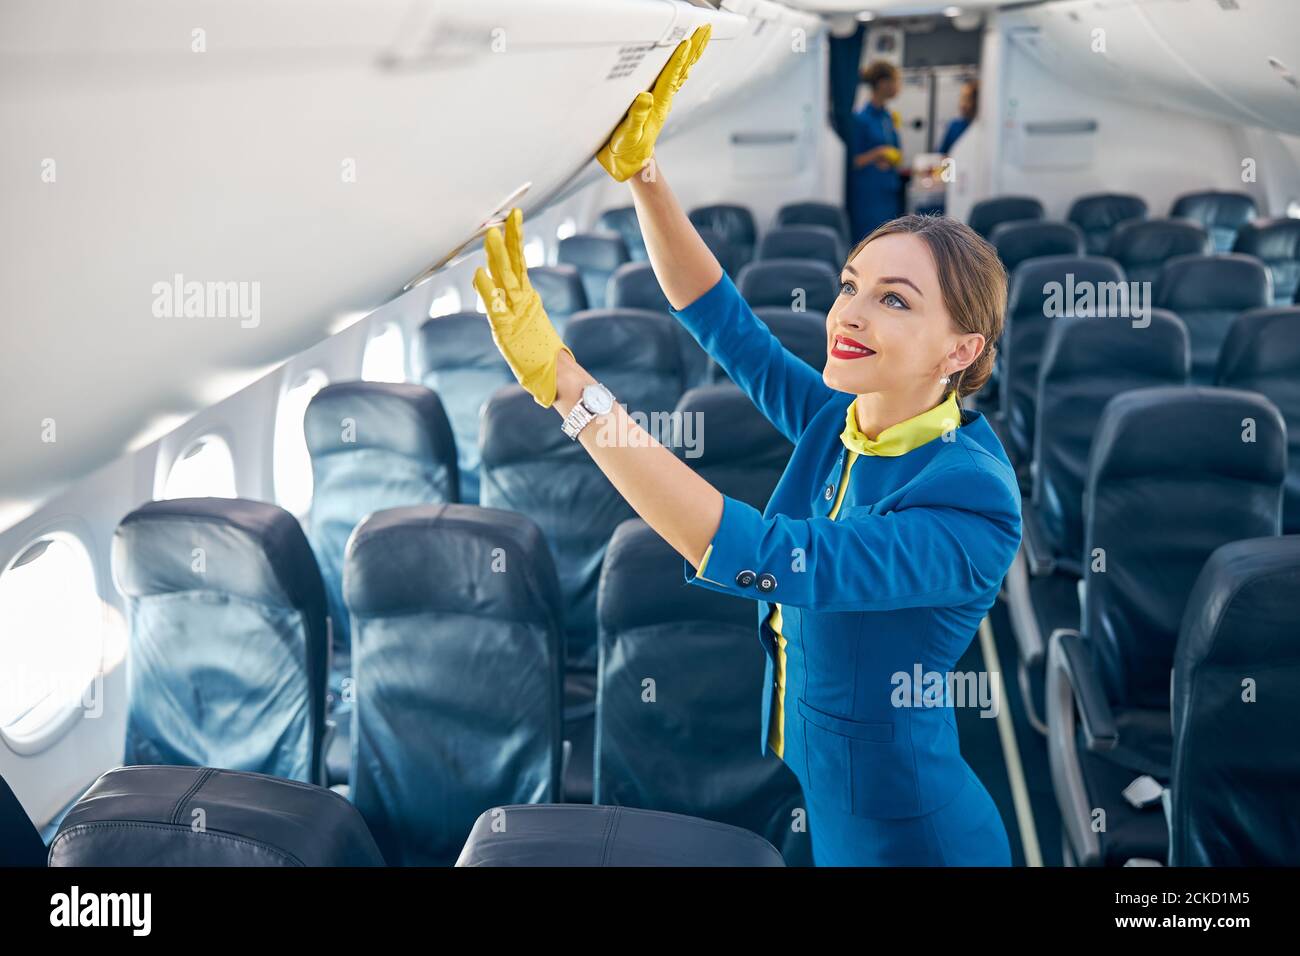 Asistente de vuelo con traje azul y guantes de espuma amarilla comprobando compartimiento con equipaje de mientras está parado en la tabla vacía de avión comercial Fotografía de stock - Alamy